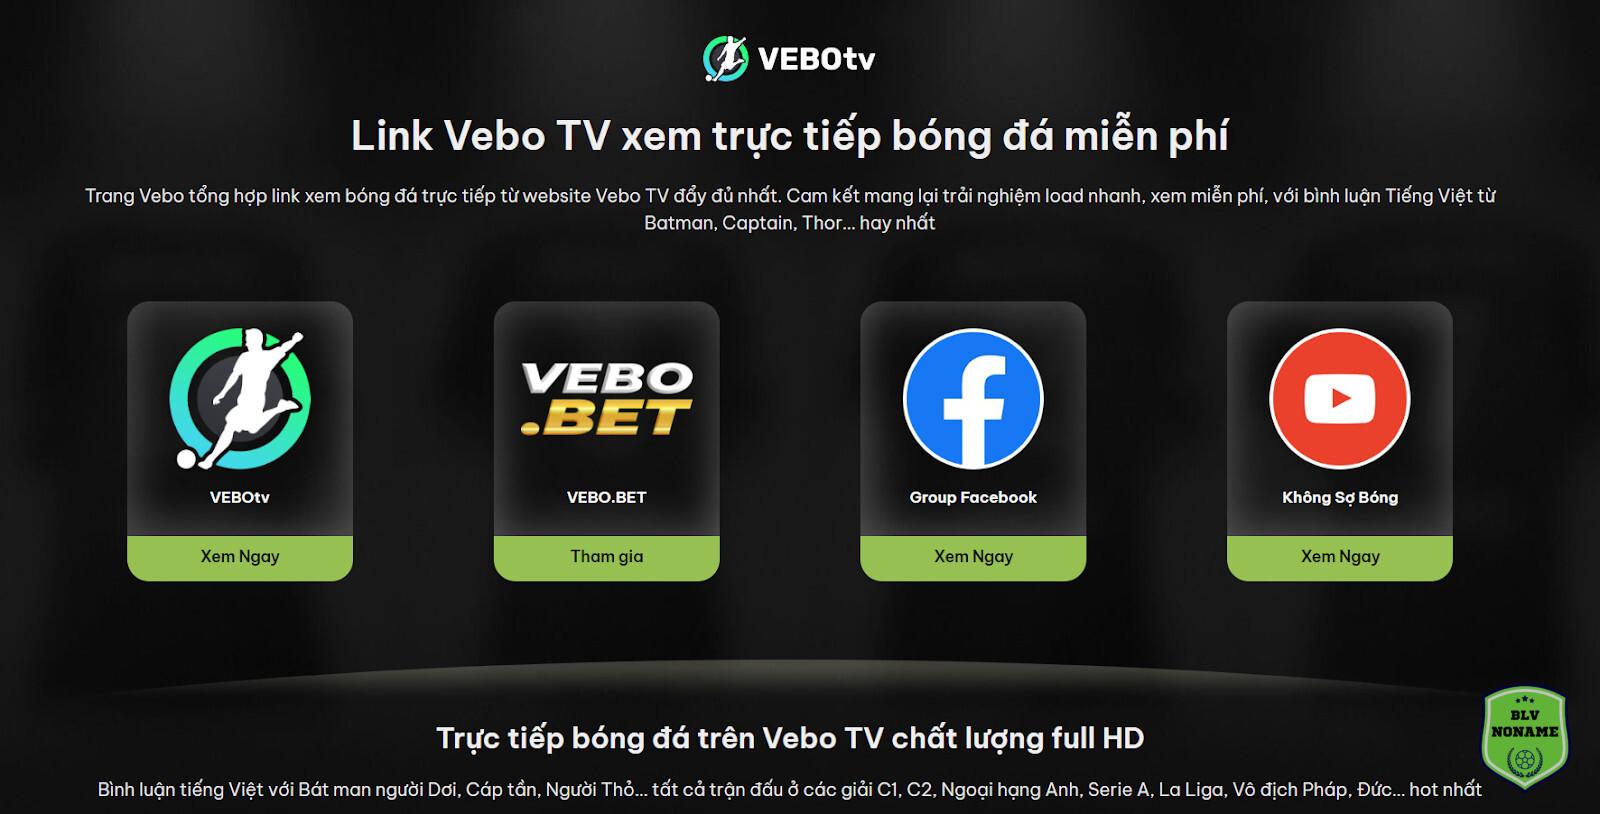 Vebo TV trực tiếp bóng đá là website gì?